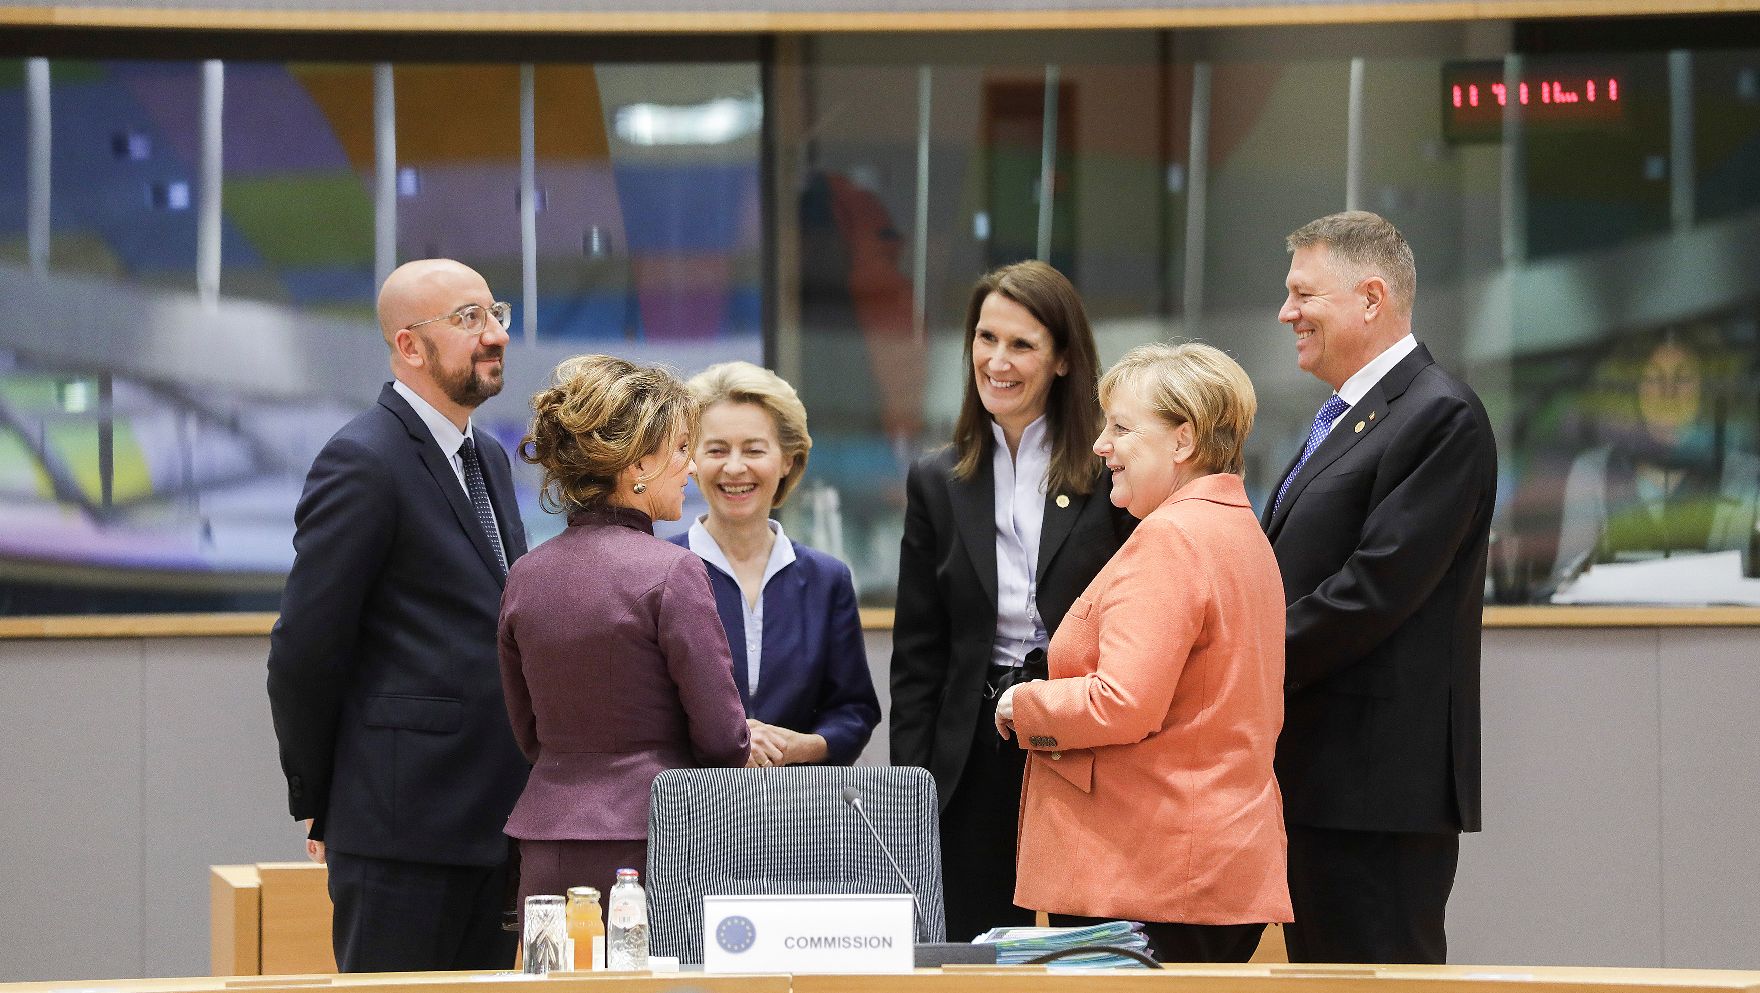 Am 12. Dezember 2019 nahm Bundeskanzlerin Brigitte Bierlein (2.v.l.) am Europäischen Rat der Staats- und Regierungschefs teil. Im Bild mit dem Präsidenten des Europäischen Rates Charles Michel (l.), der Präsidentin der Europäischen Kommission Ursula von der Leyen (3.v.l.), der belgischen Premierministerin Sophie Wilmès (4.v.l.), der deutschen Bundeskanzlerin Angela Merkel (5.v.l.) und dem rumänischen Präsidenten Klaus Johannis (6.v.l.).